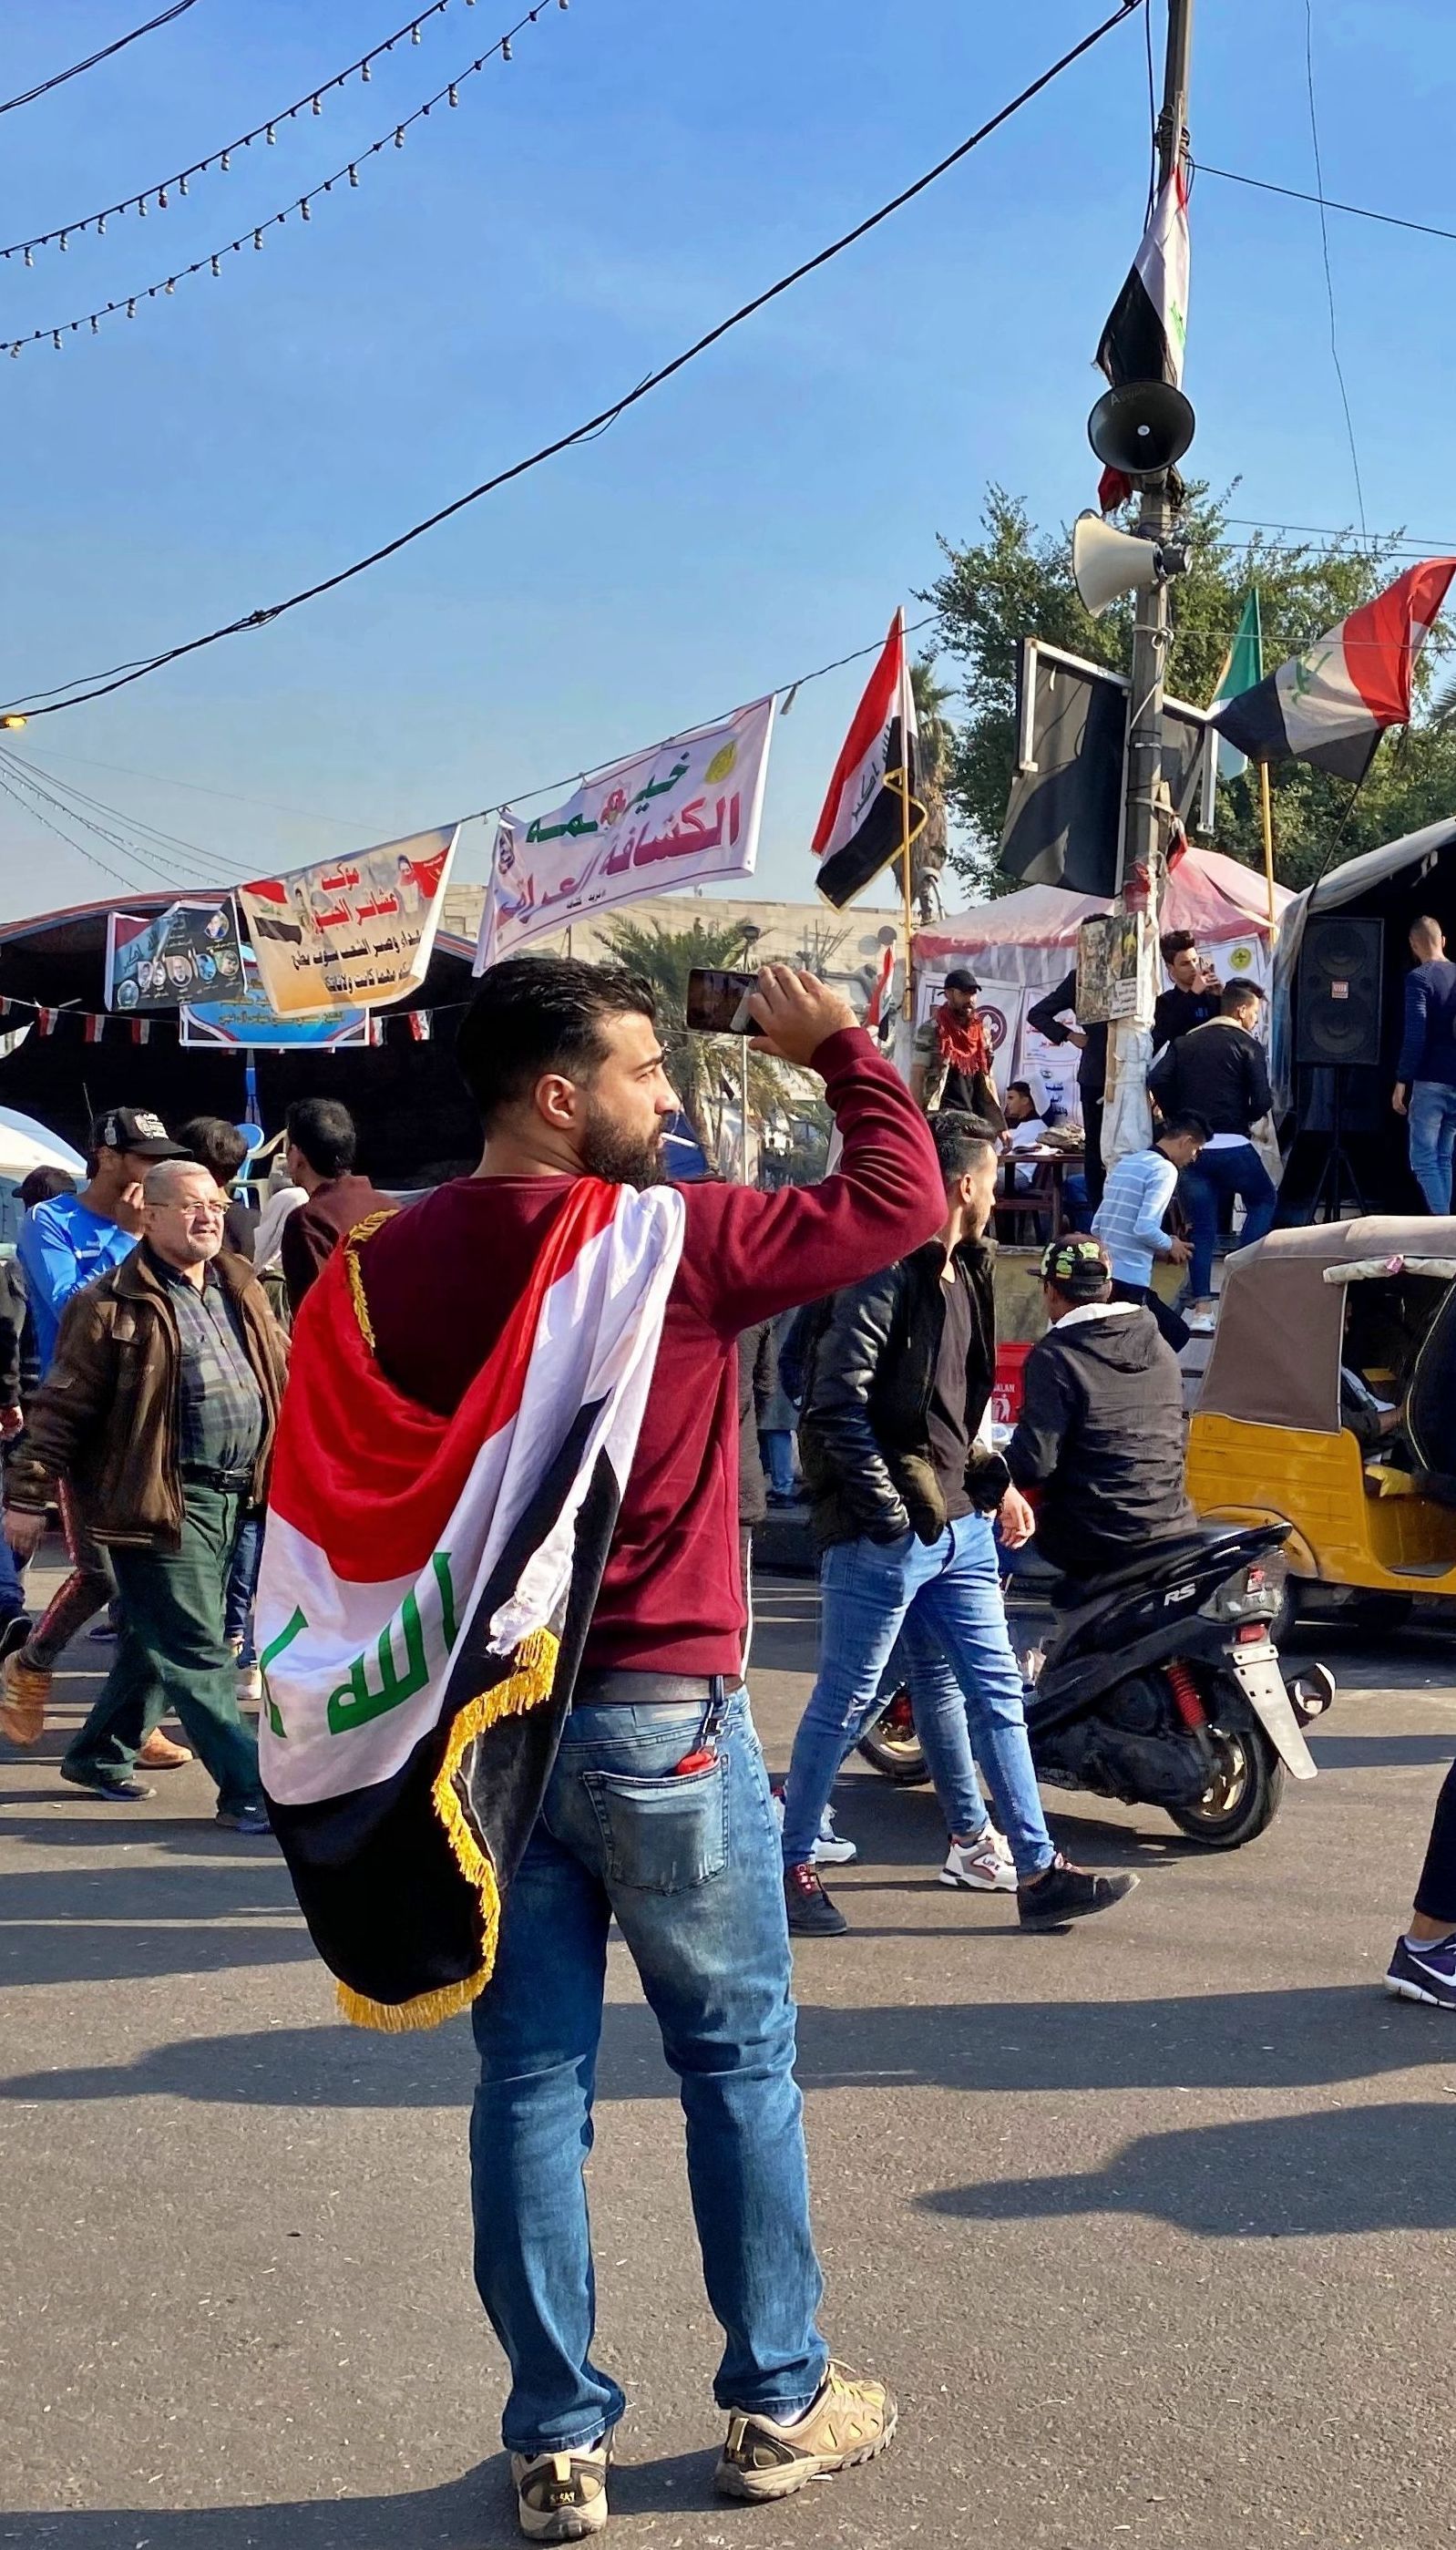 В Іраку тисячі людей вийшли на антиурядові протести